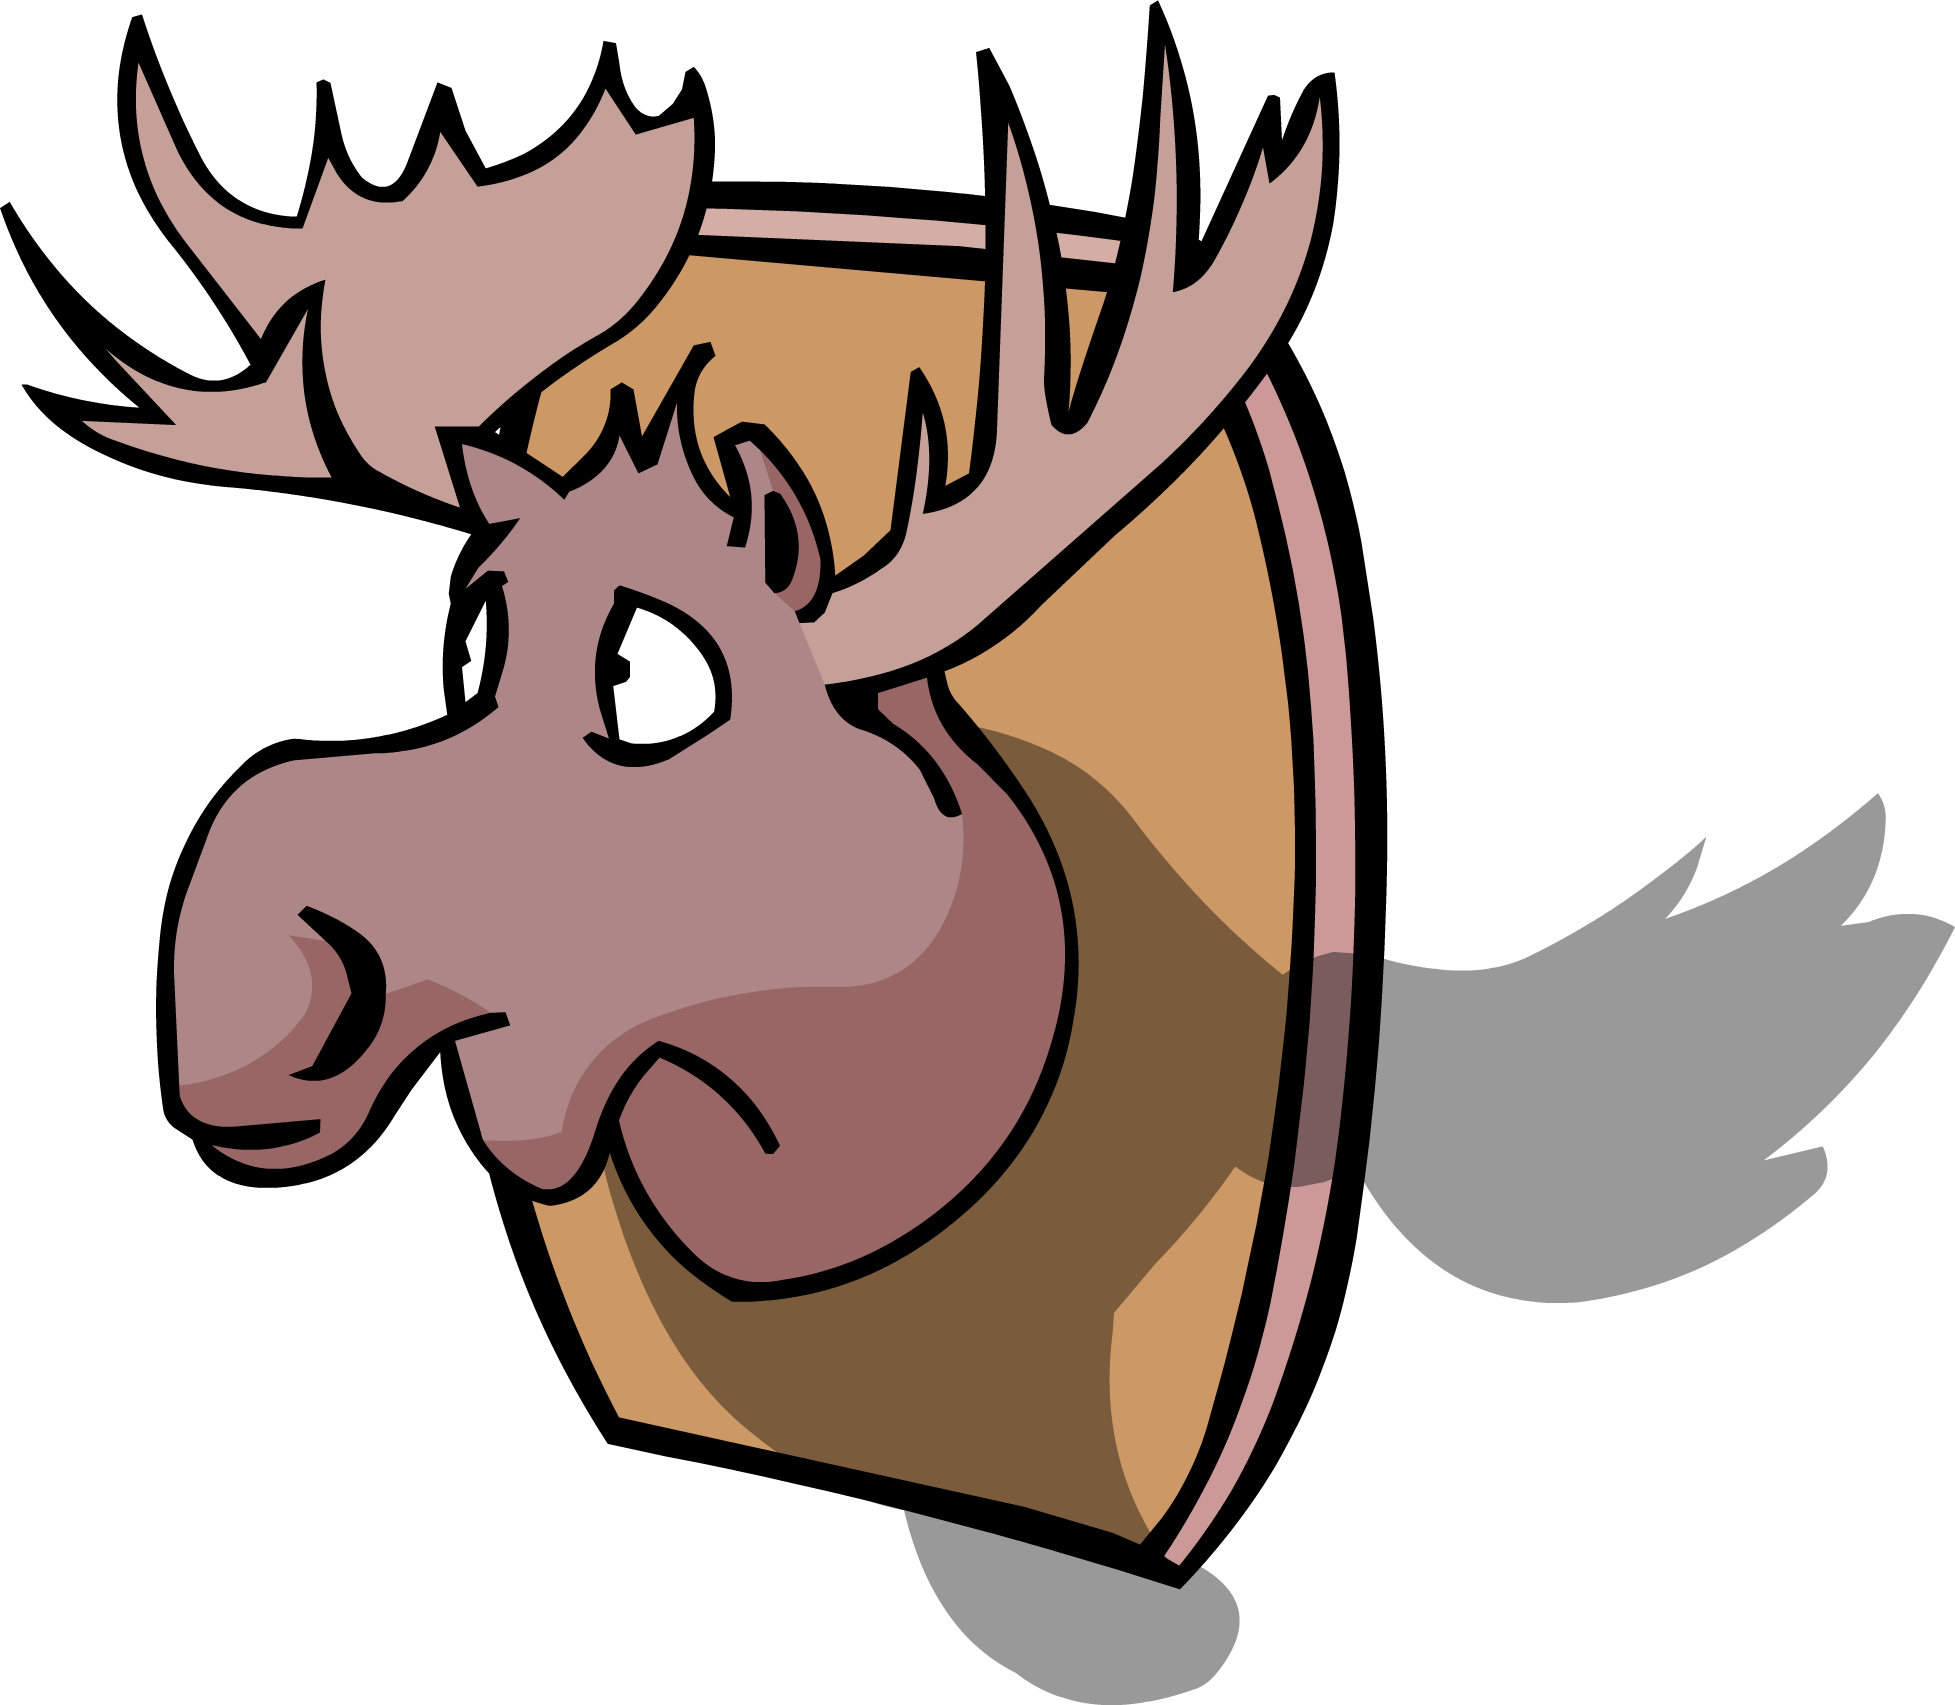 Moose Head Sprite 005 - Moose Head (1955x1705)